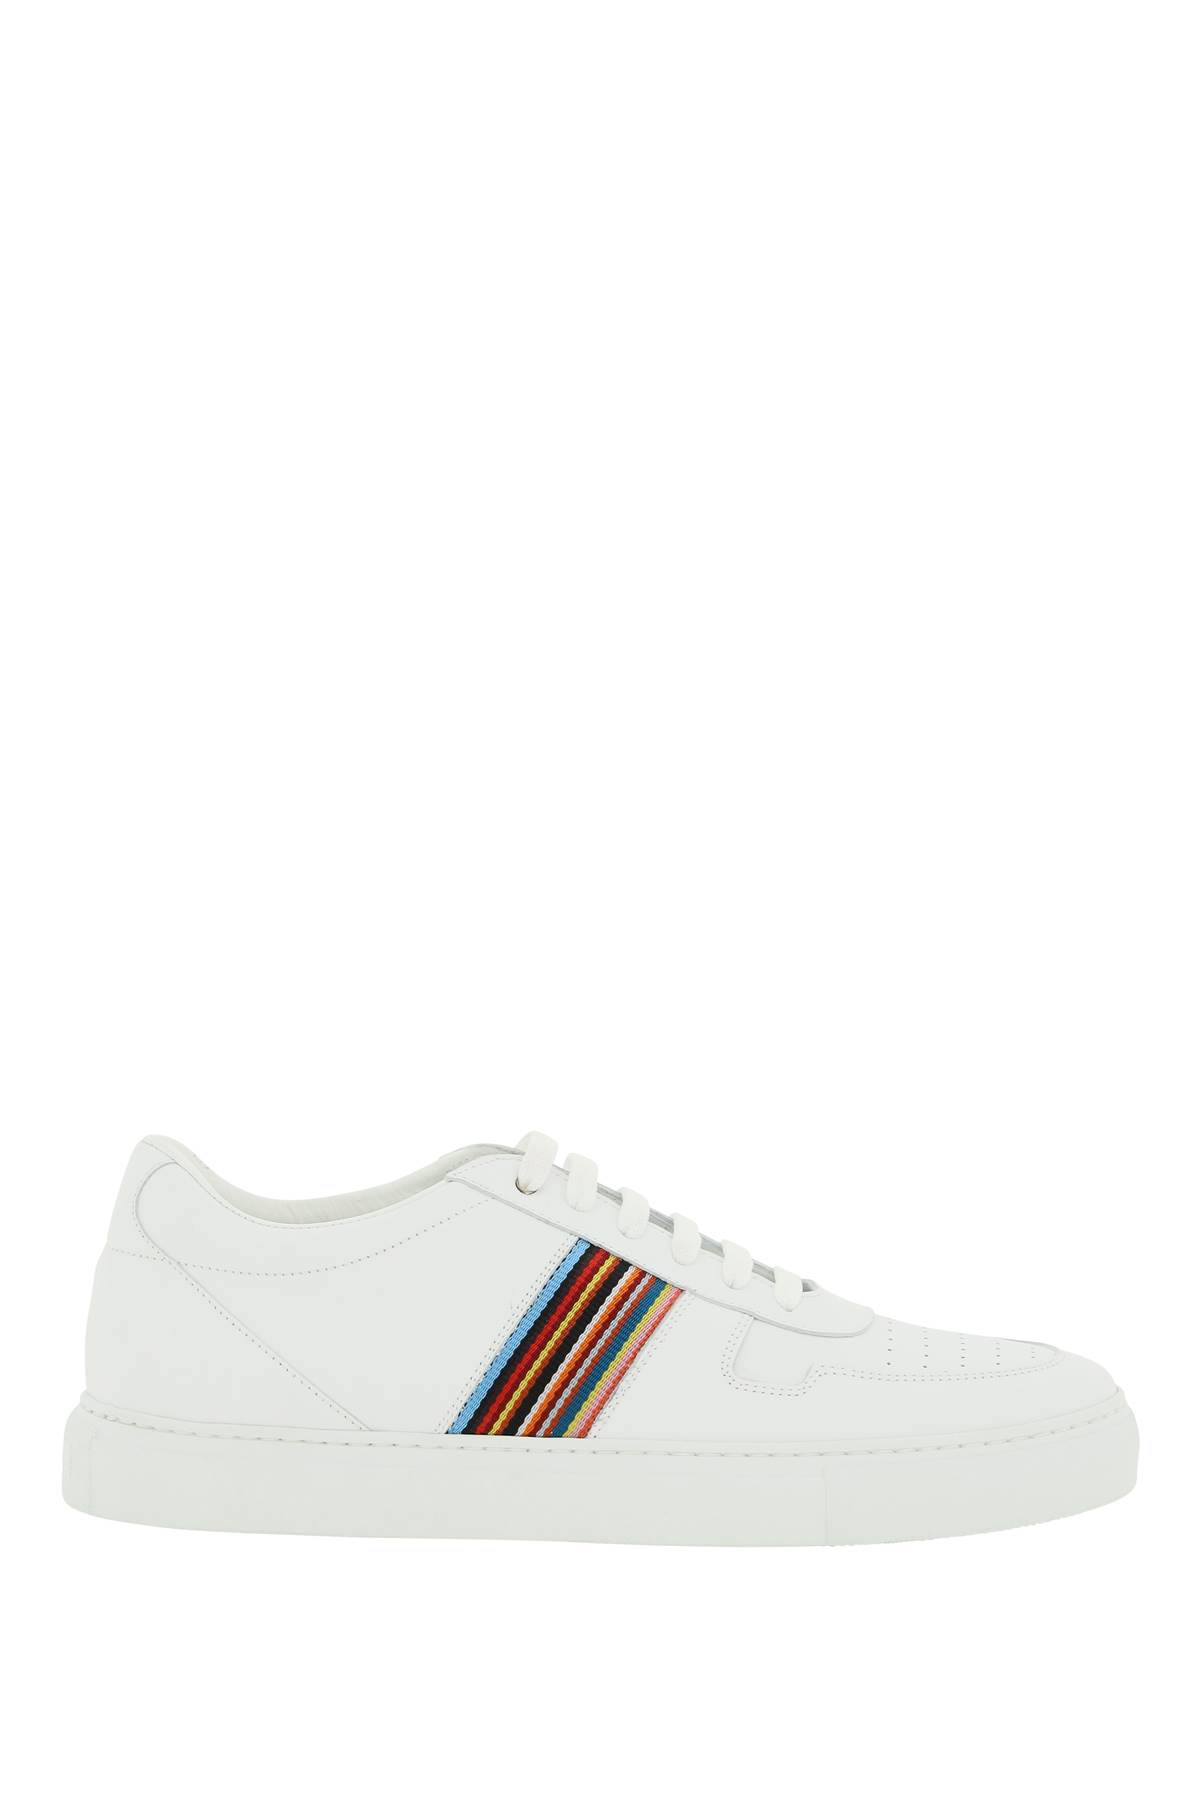 Paul Smith Fermi Sneakers In White